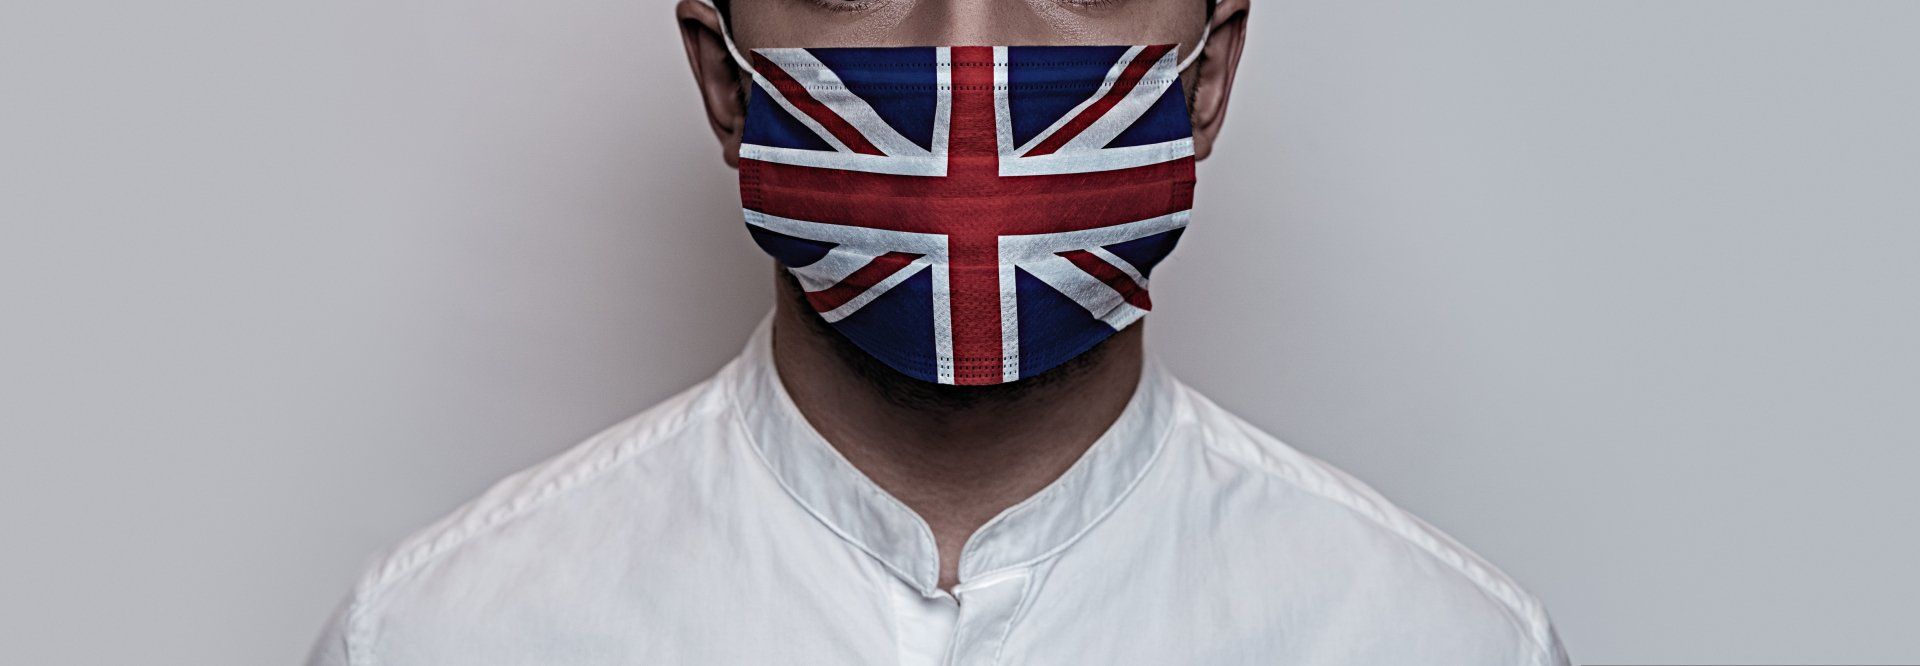 Man wearing Union Jack facemask